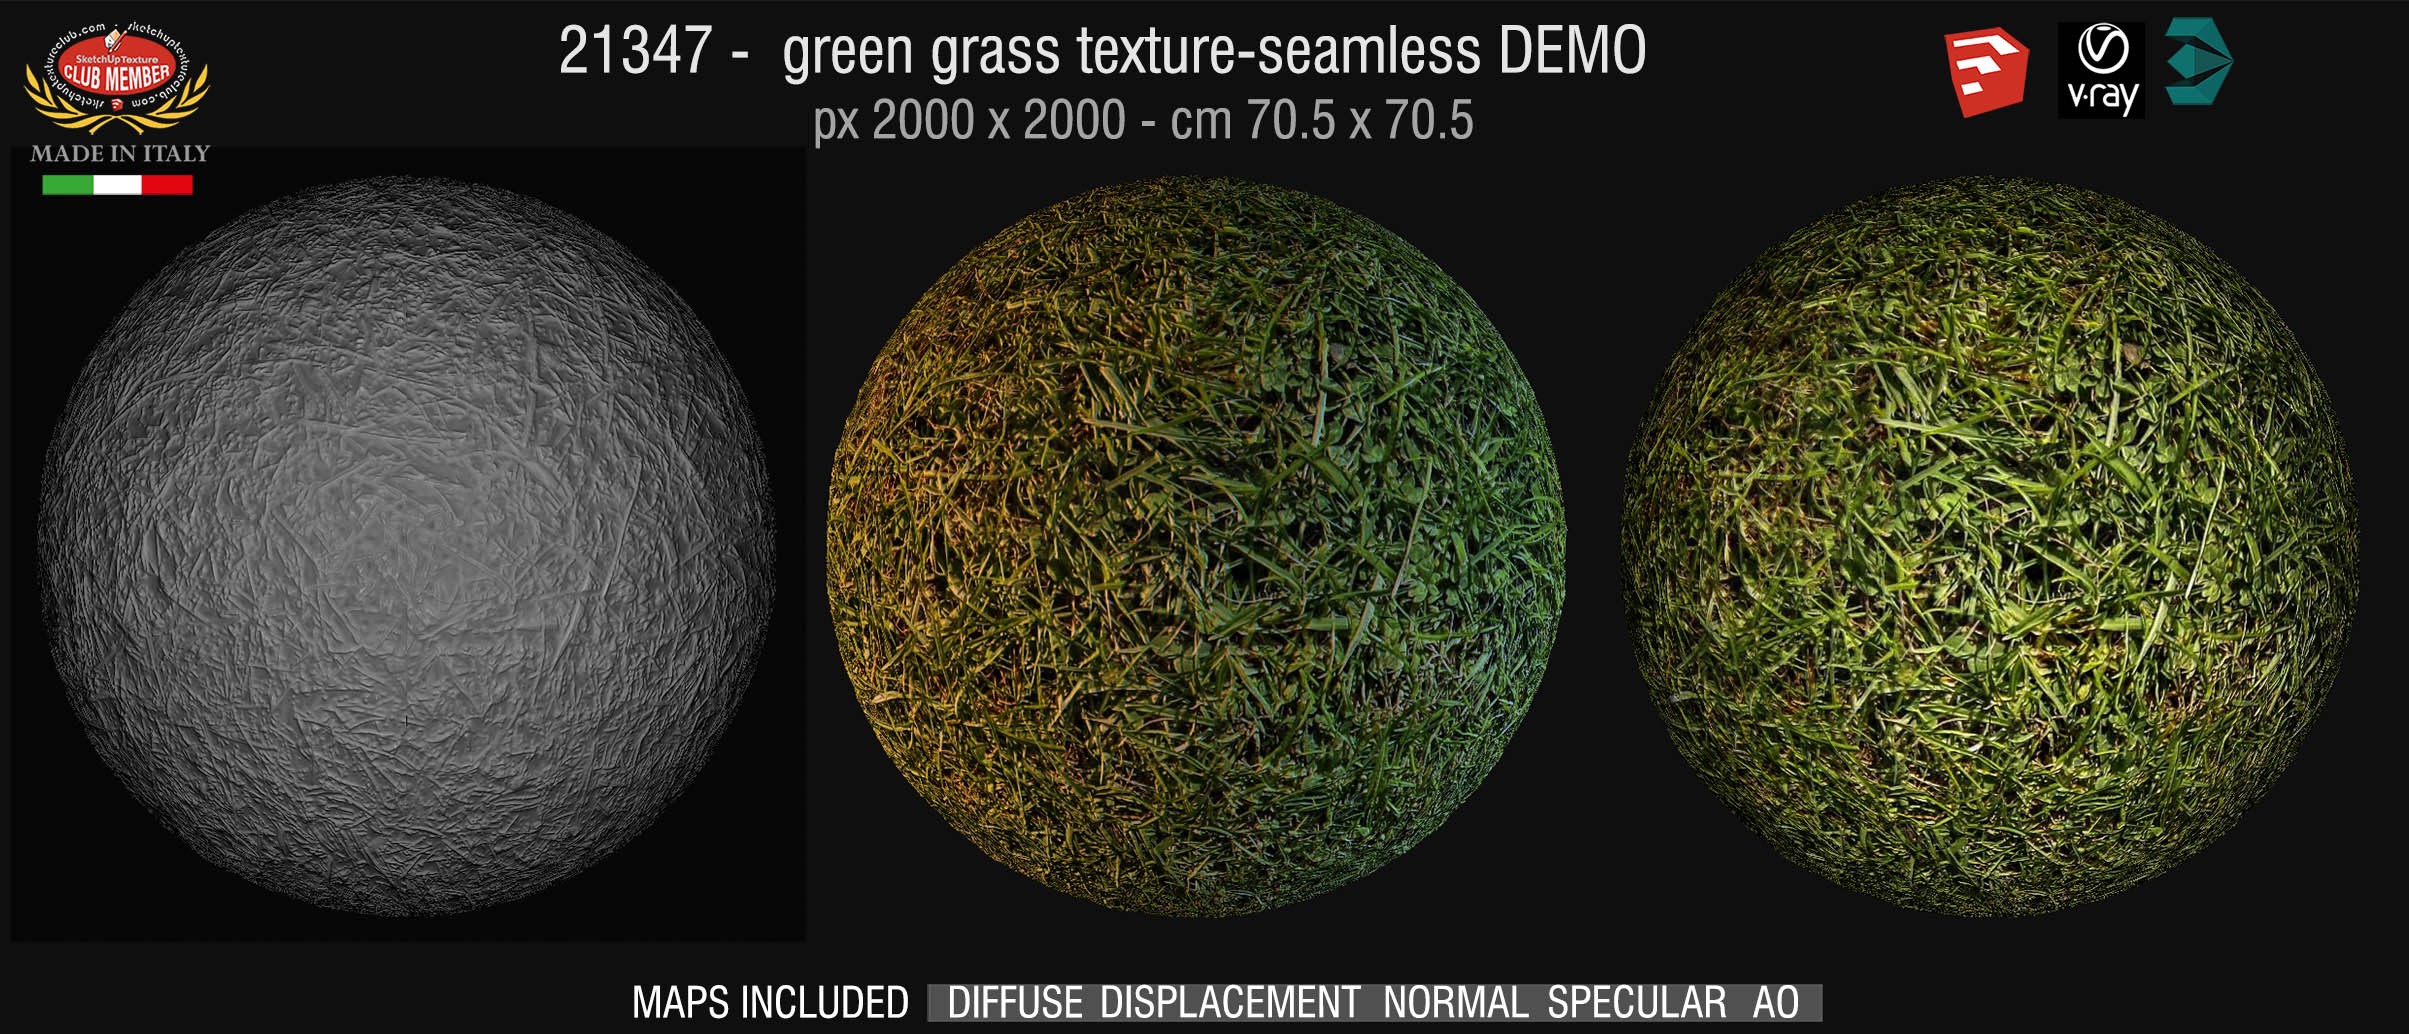 21347 HR Green grass texture + maps DEMO